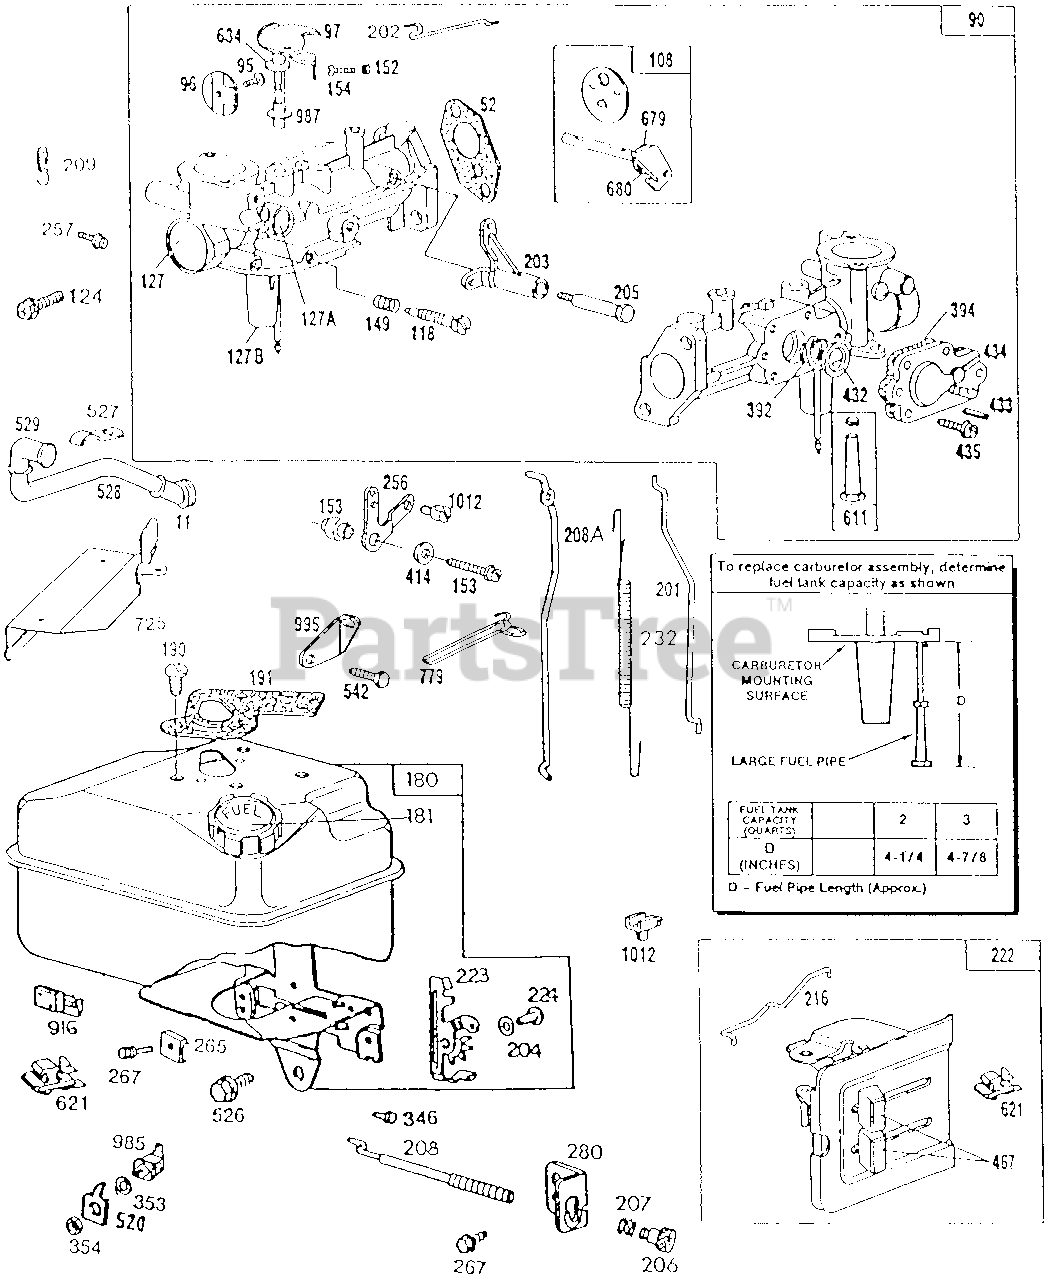 Briggs & Stratton 112202-0833-01 - Briggs & Stratton Horizontal Engine  Carburetor & Fuel Tank Assy Parts Lookup with Diagrams